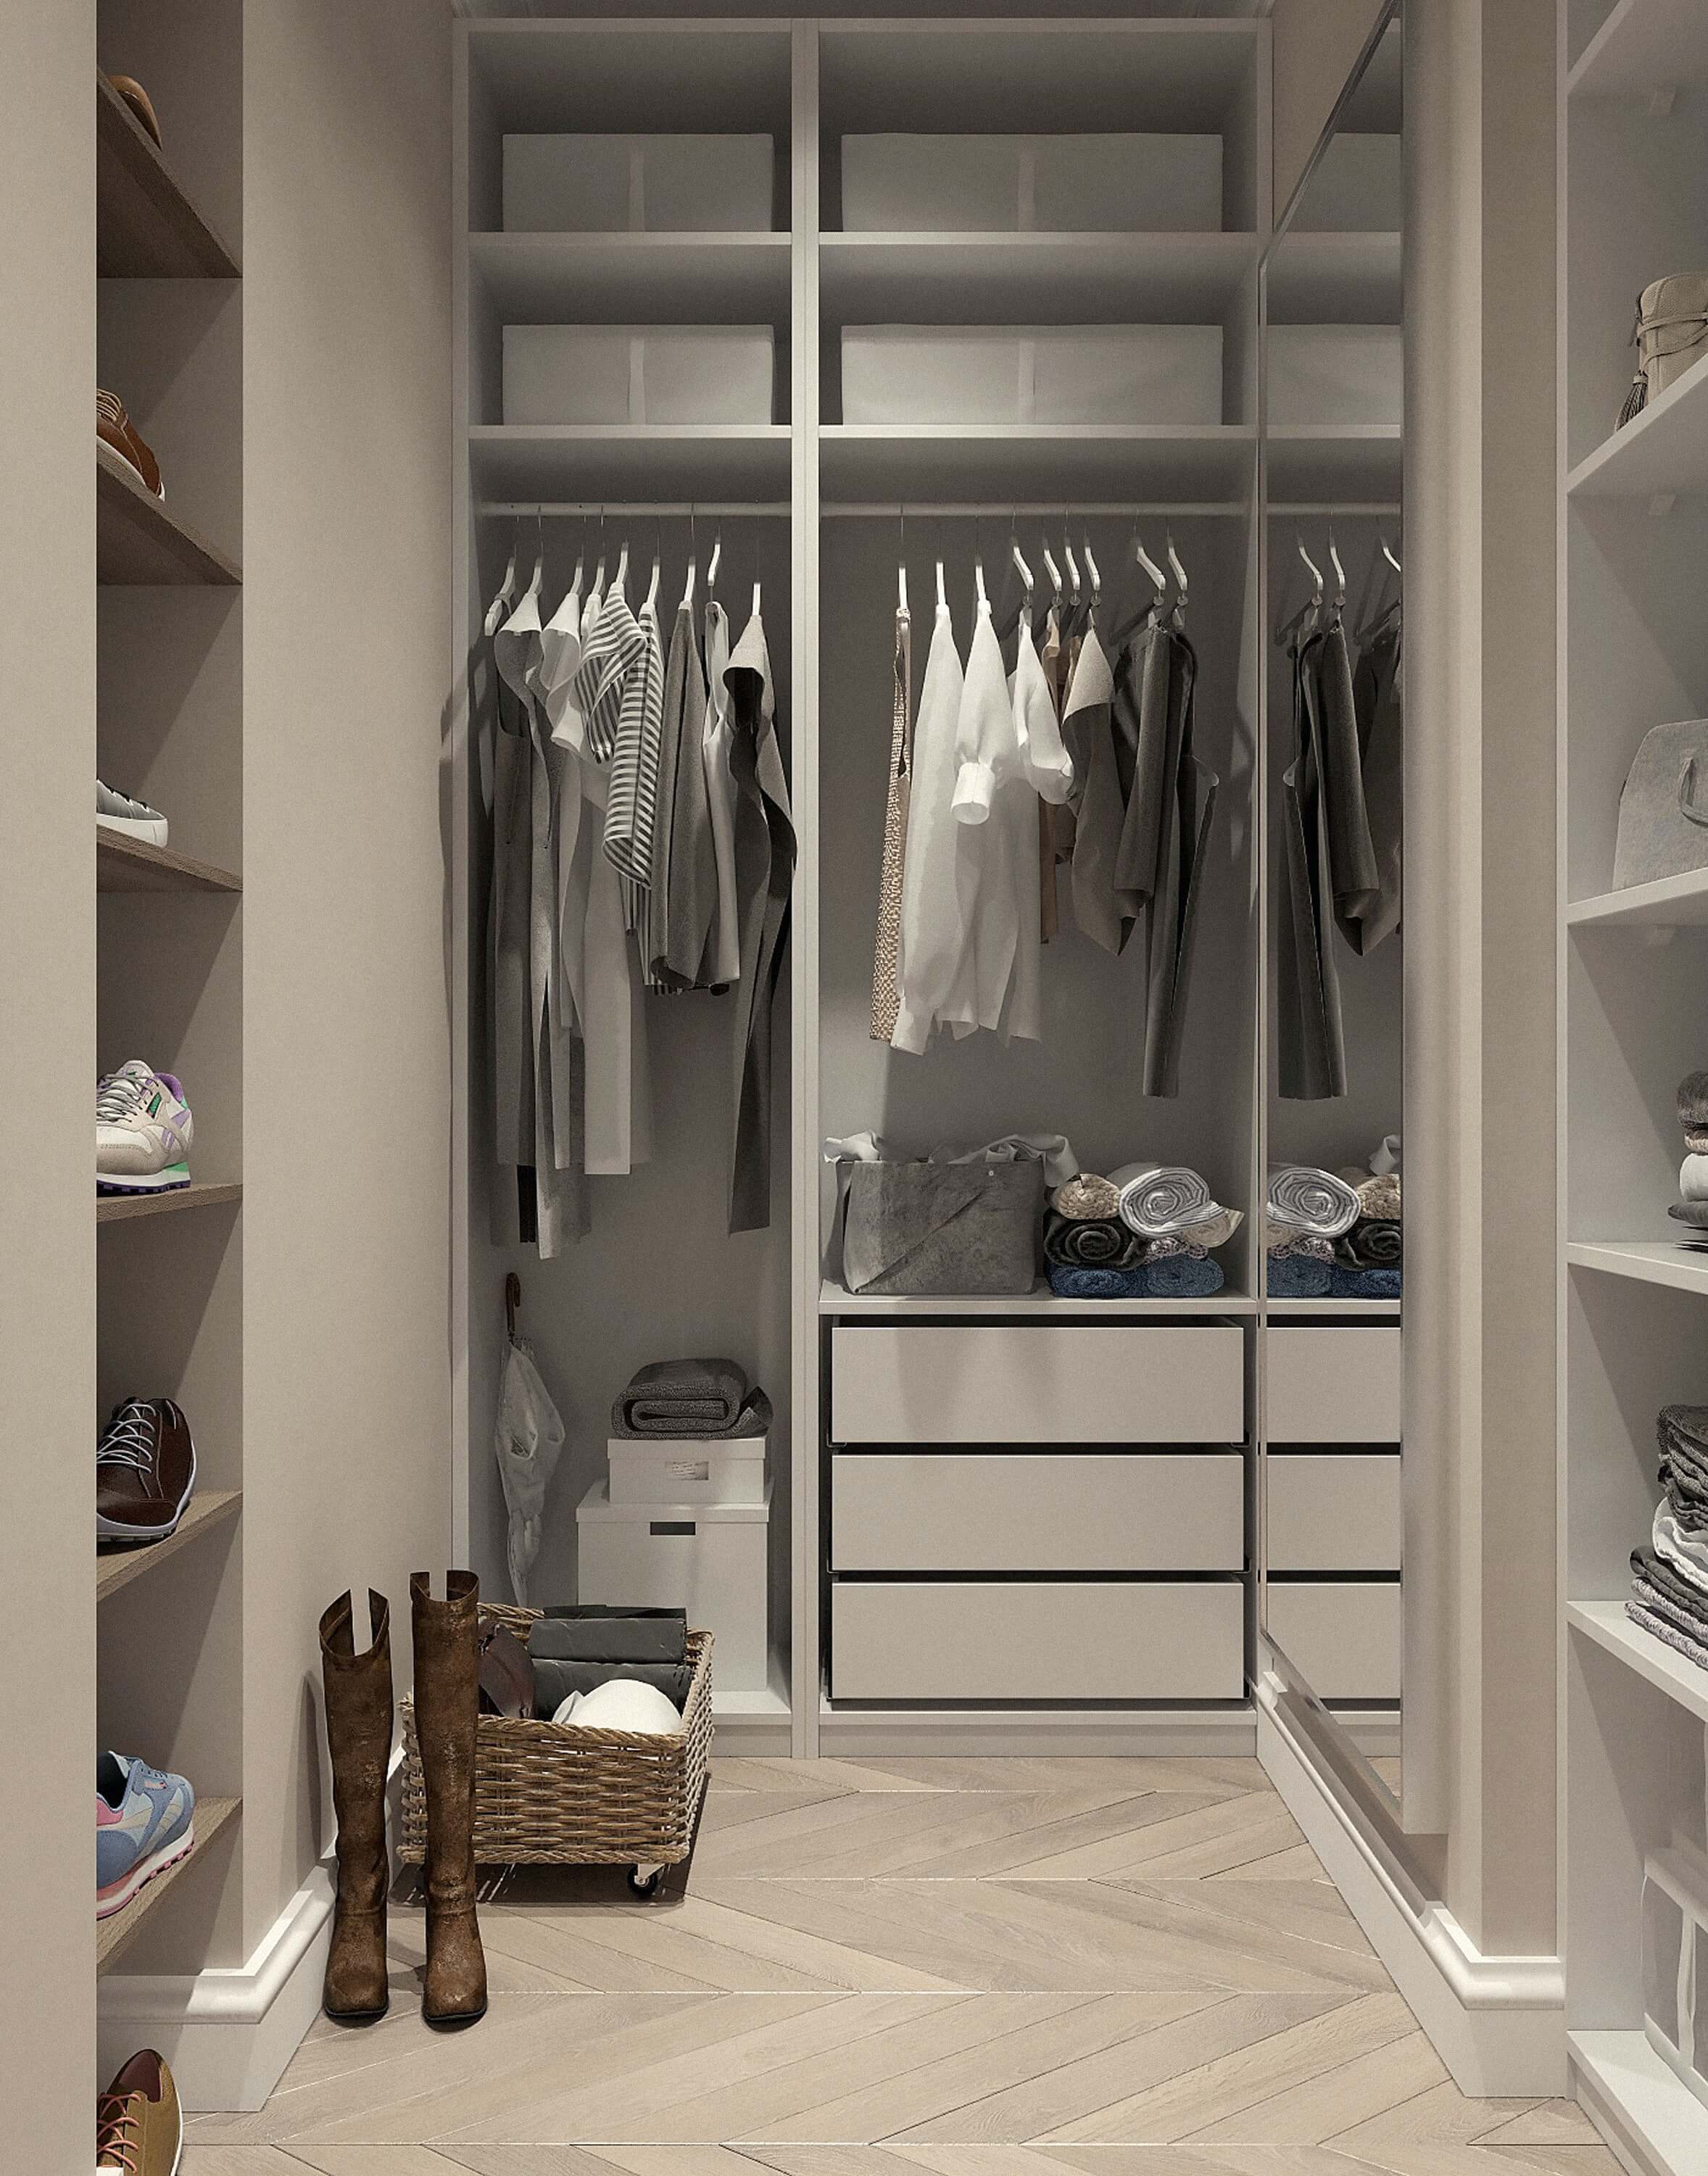 clothes inside a wardrobe.jpg